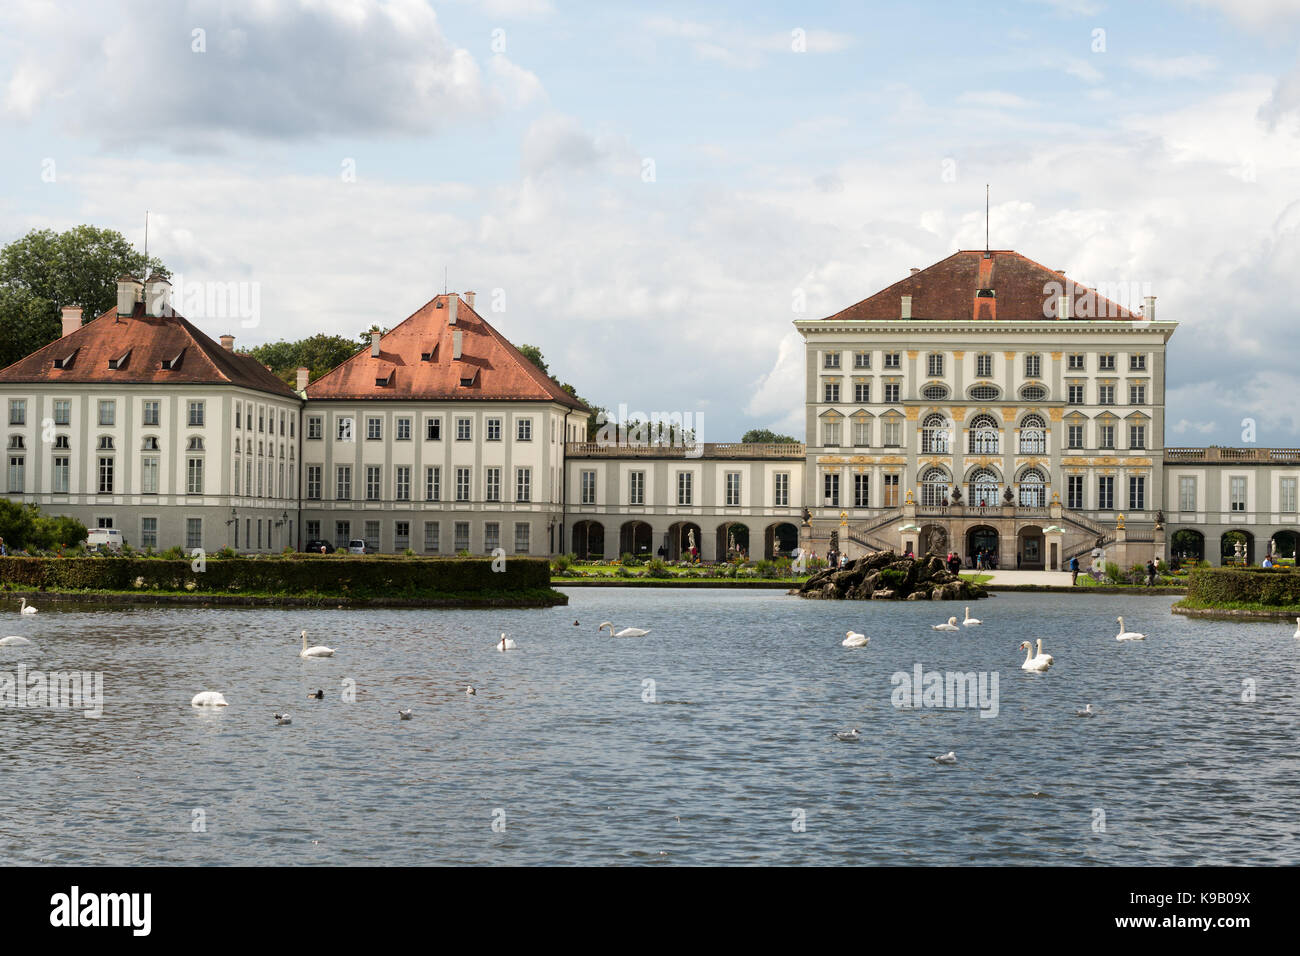 Nymphenburg Palace Munich, Germany, Europe. Stock Photo